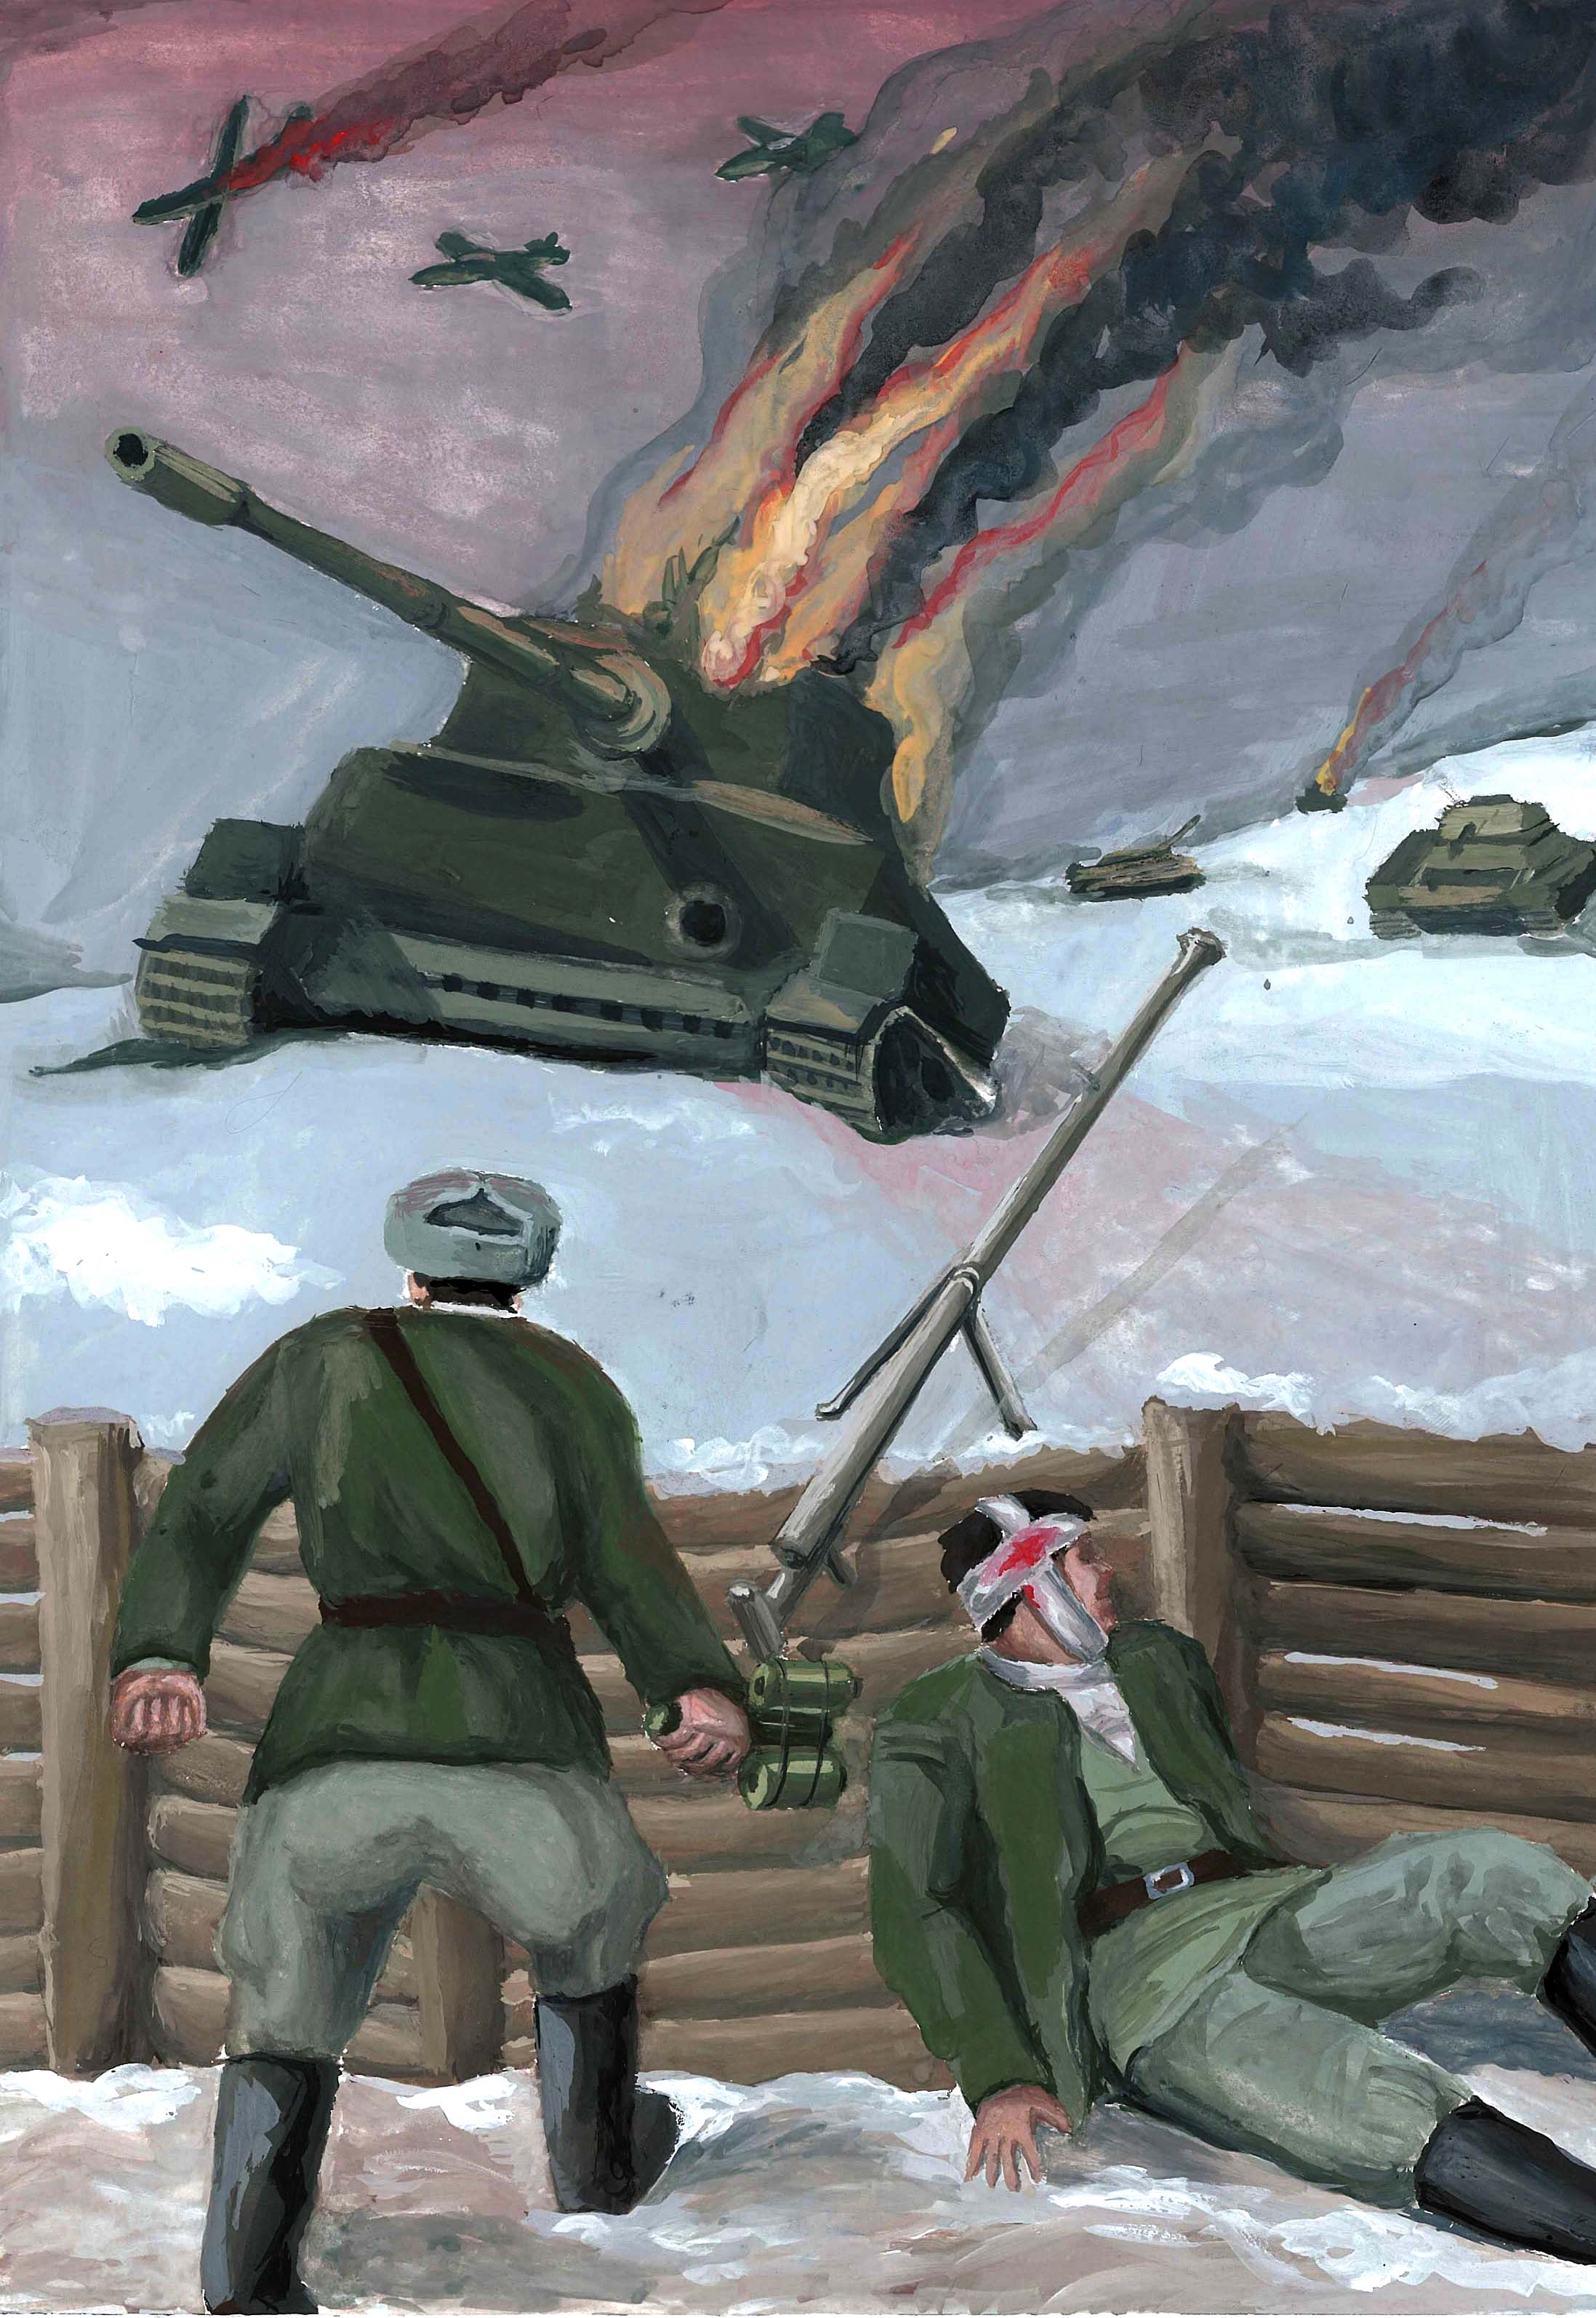 картинки к 80 летию битвы за москву